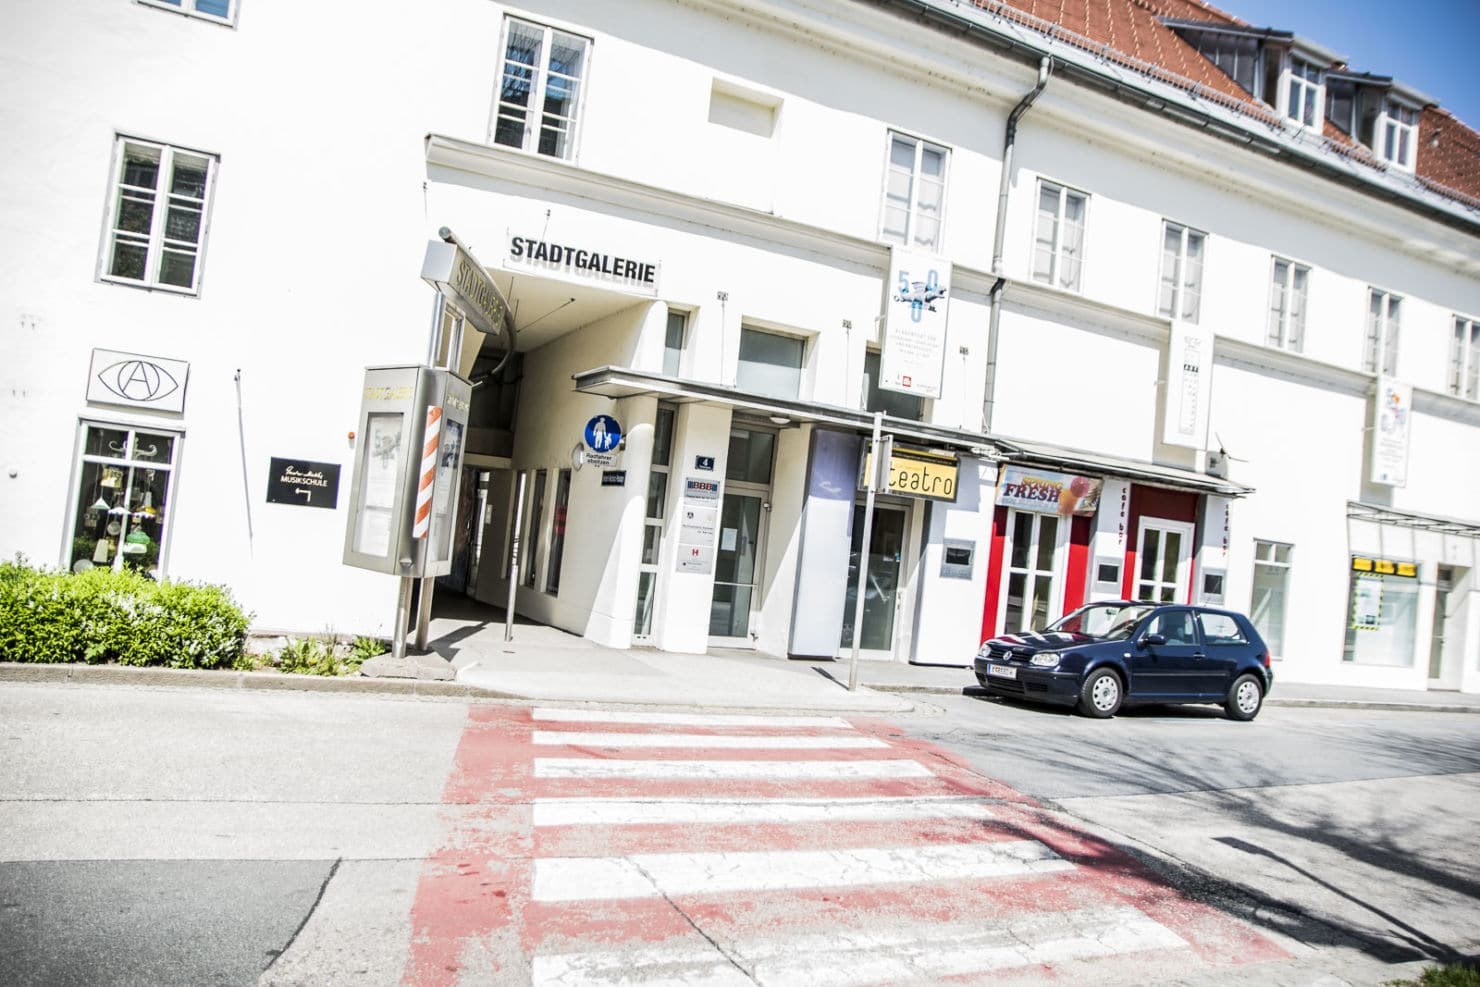 Kultureinrichtungen wie die Klagenfurter Stadtgalerie können weiterhin gratis besucht werden.